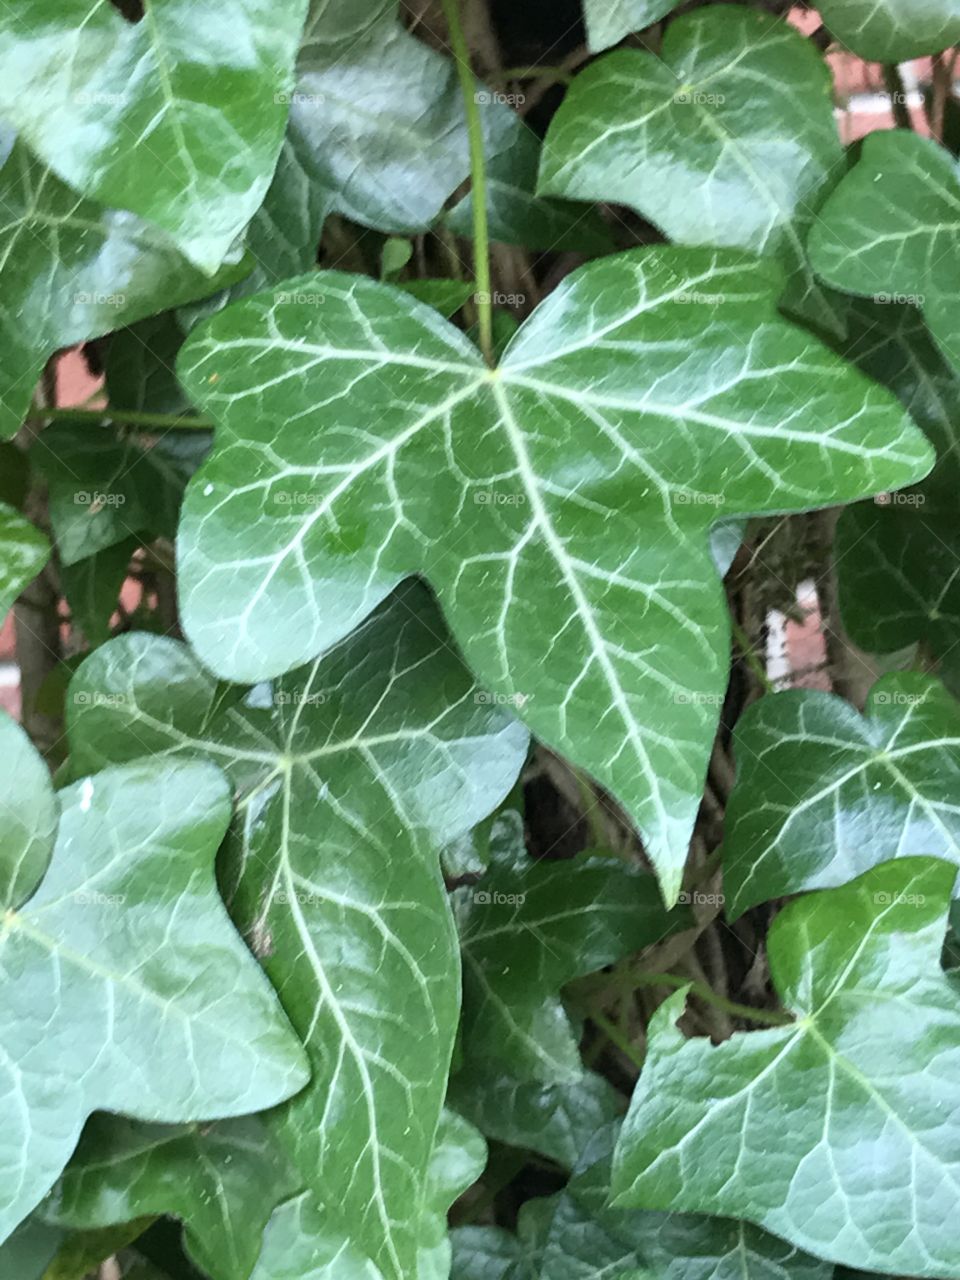 Ivy leaf, April 2017